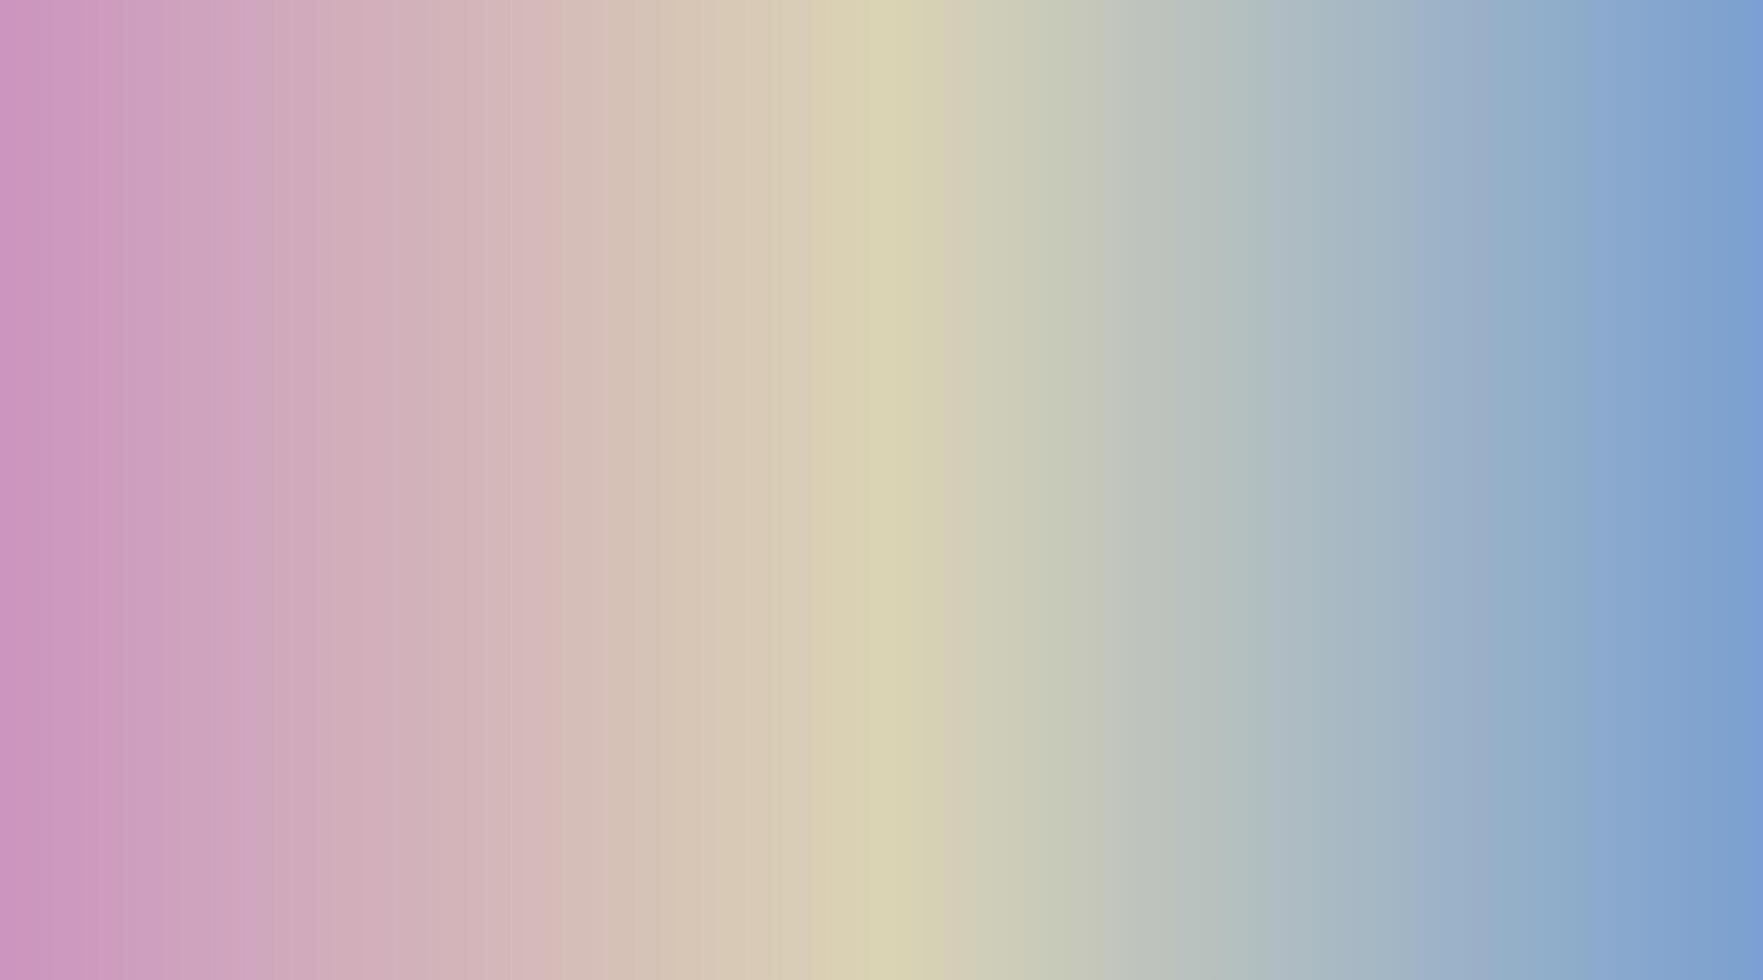 uma roxo-amarelo-azul misturado abstrato gradiente fundo vetor